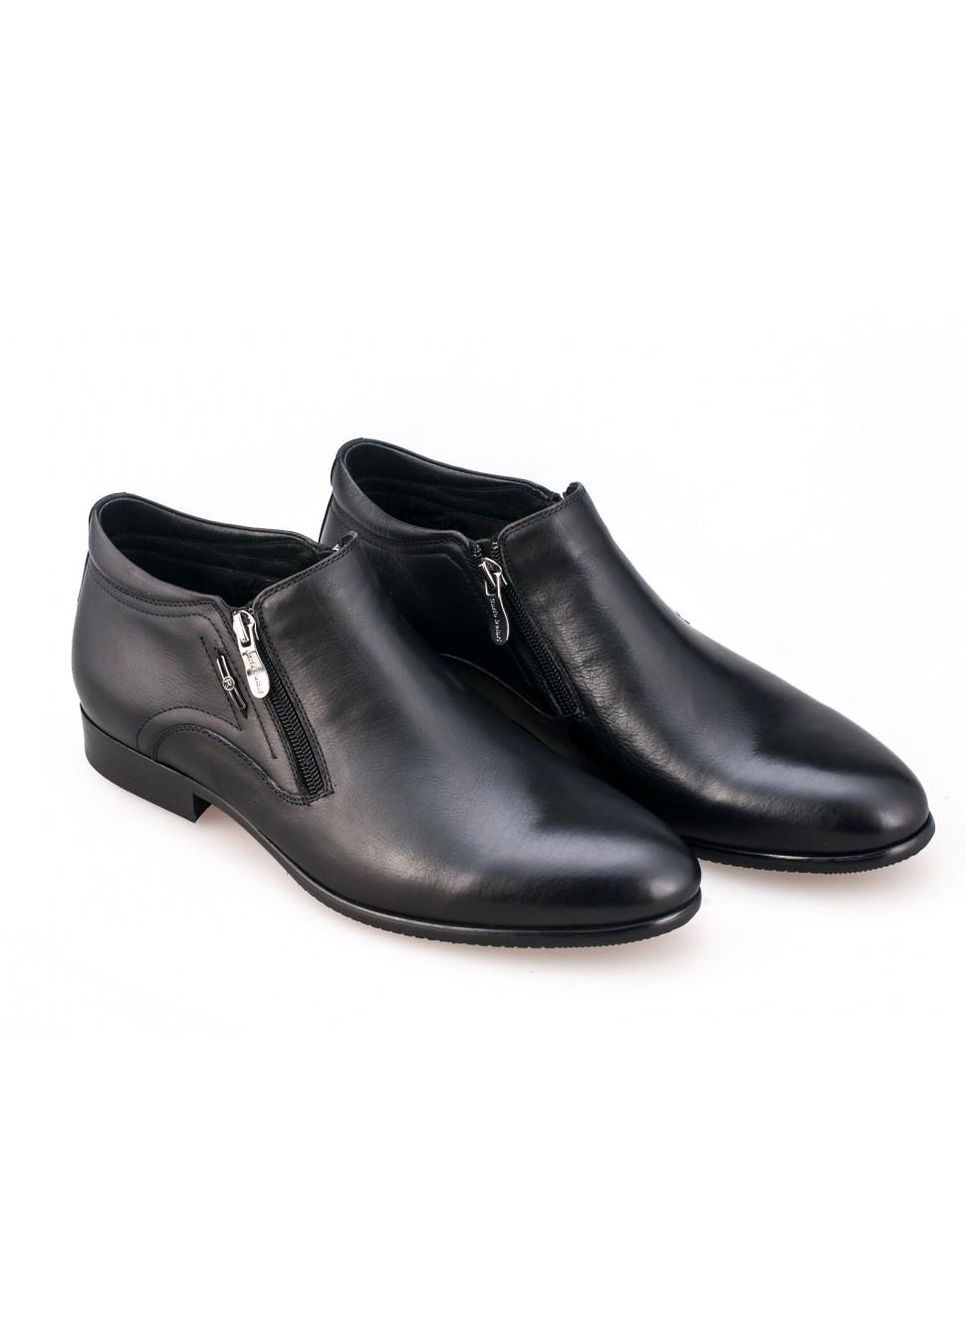 Черные зимние ботинки 7174091-б 38 цвет черный Carlo Delari